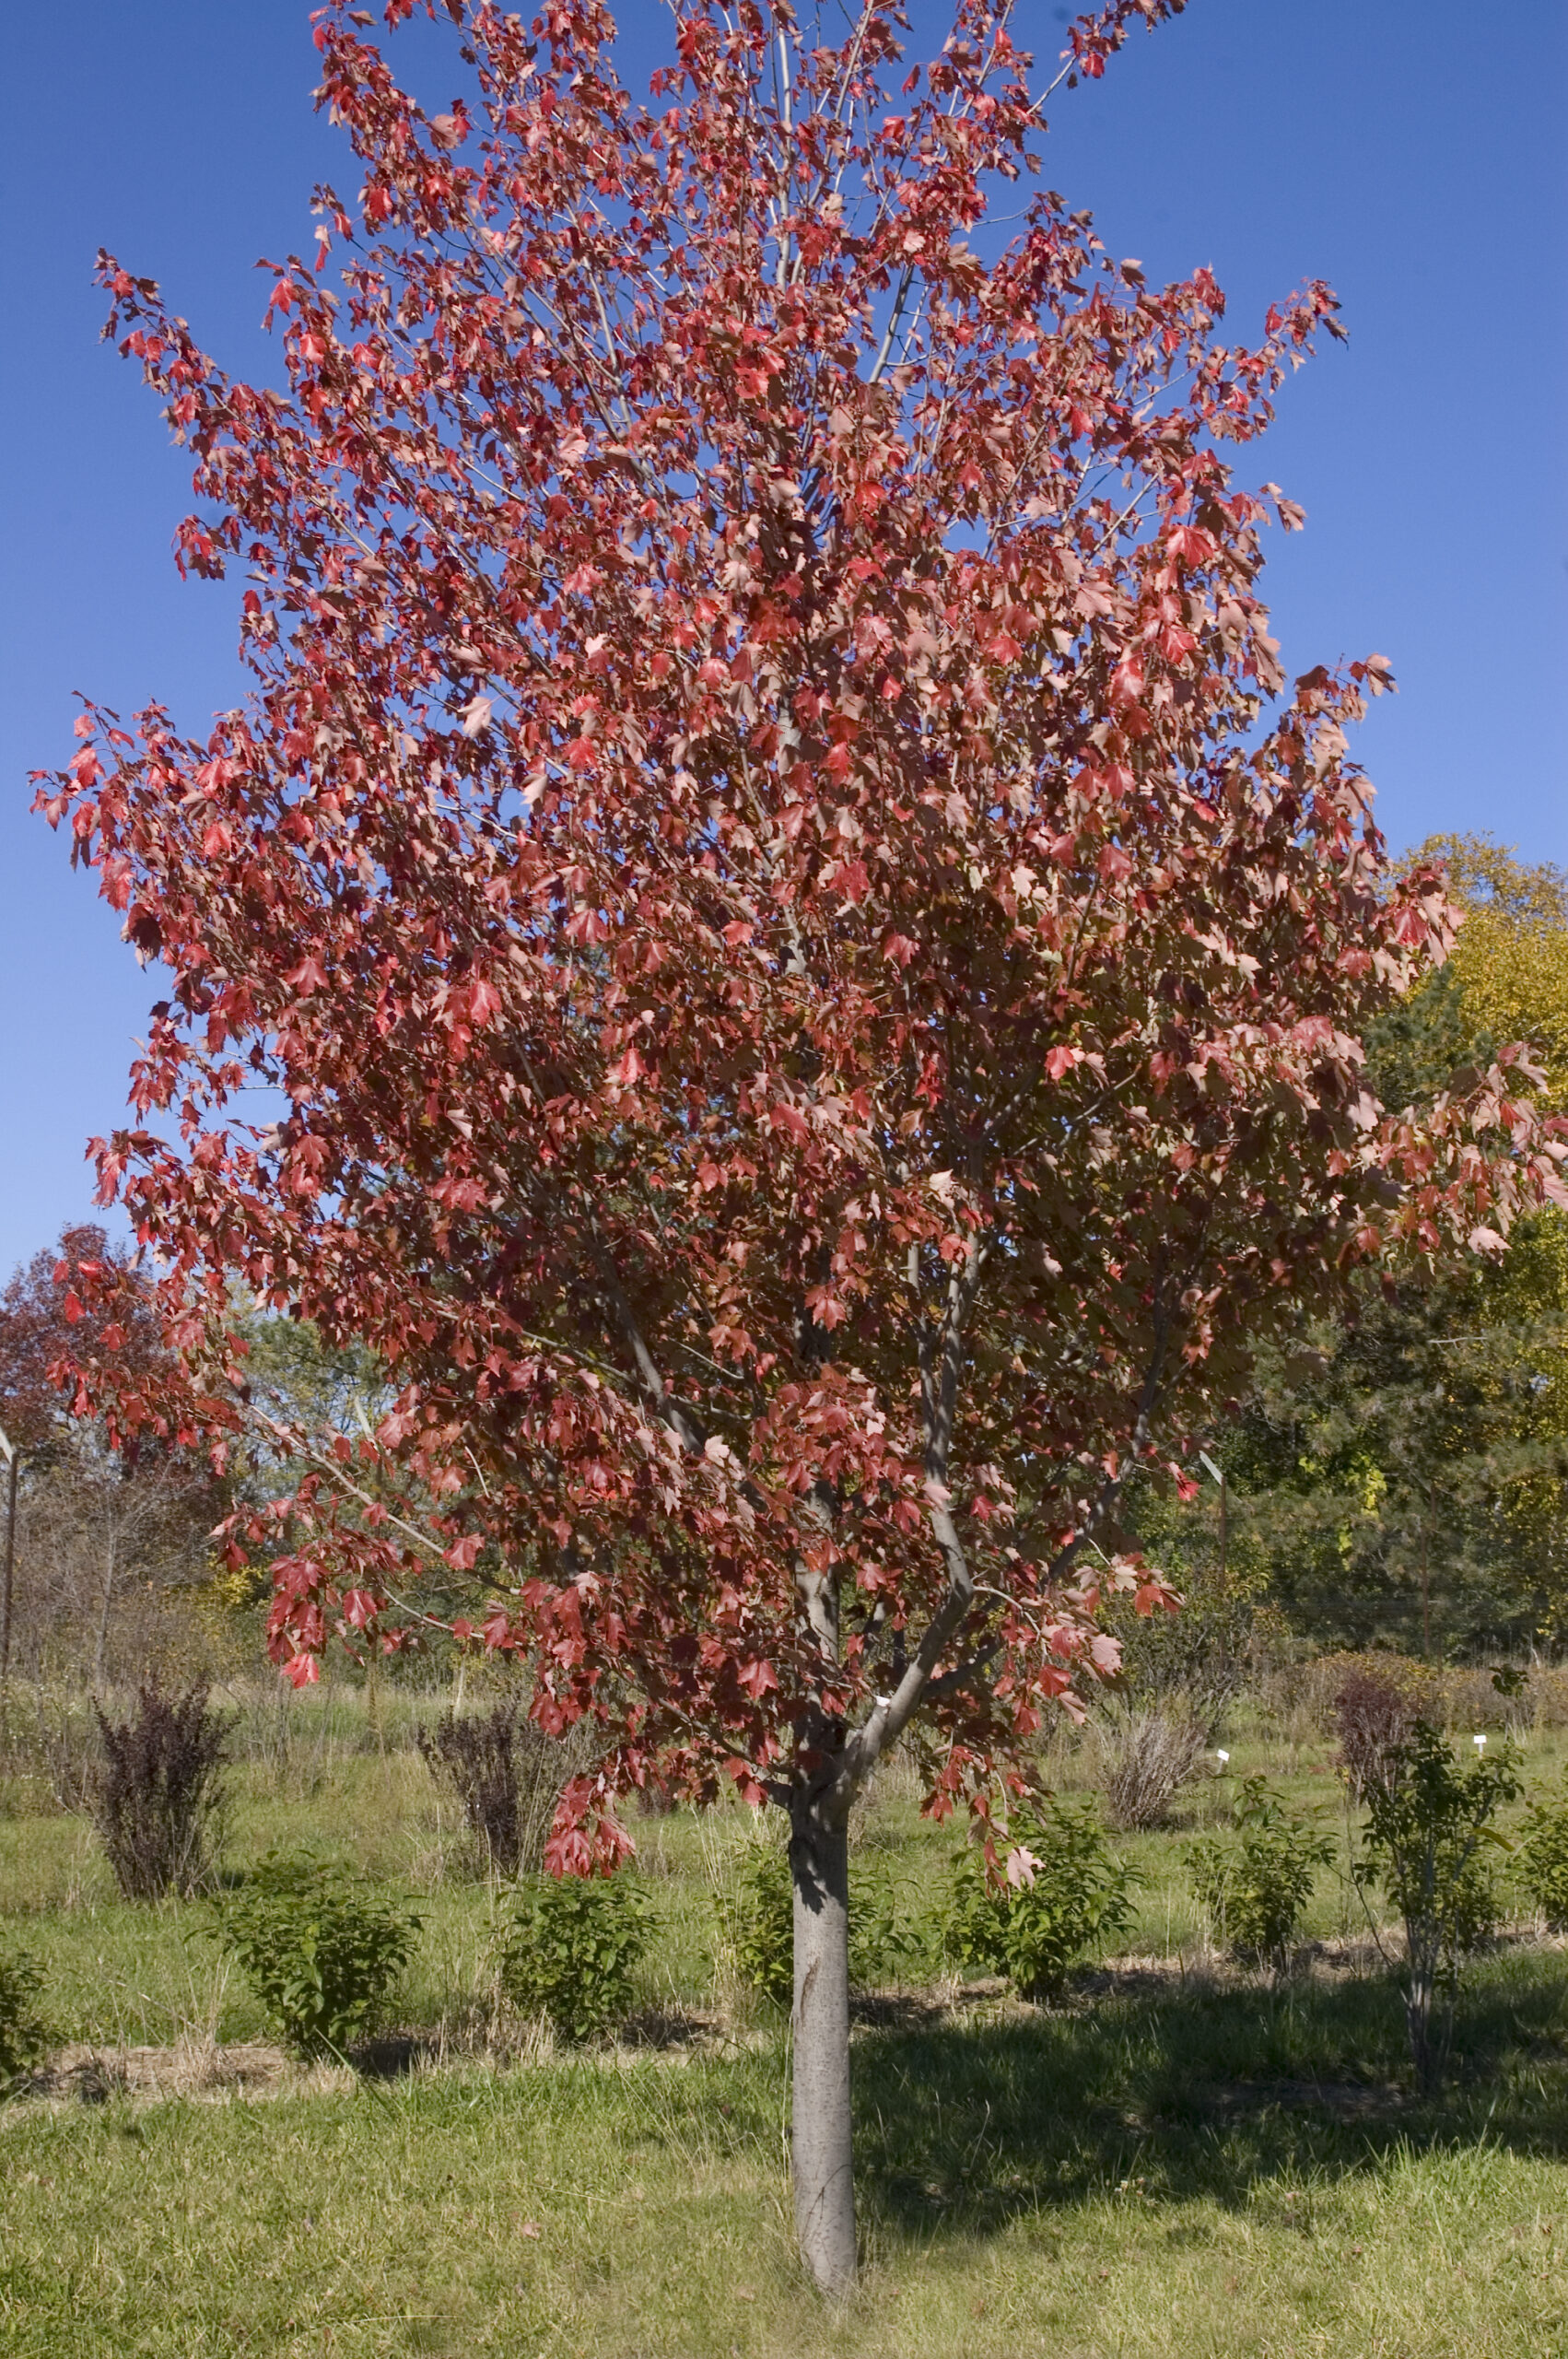 Maple Autumn Radiance